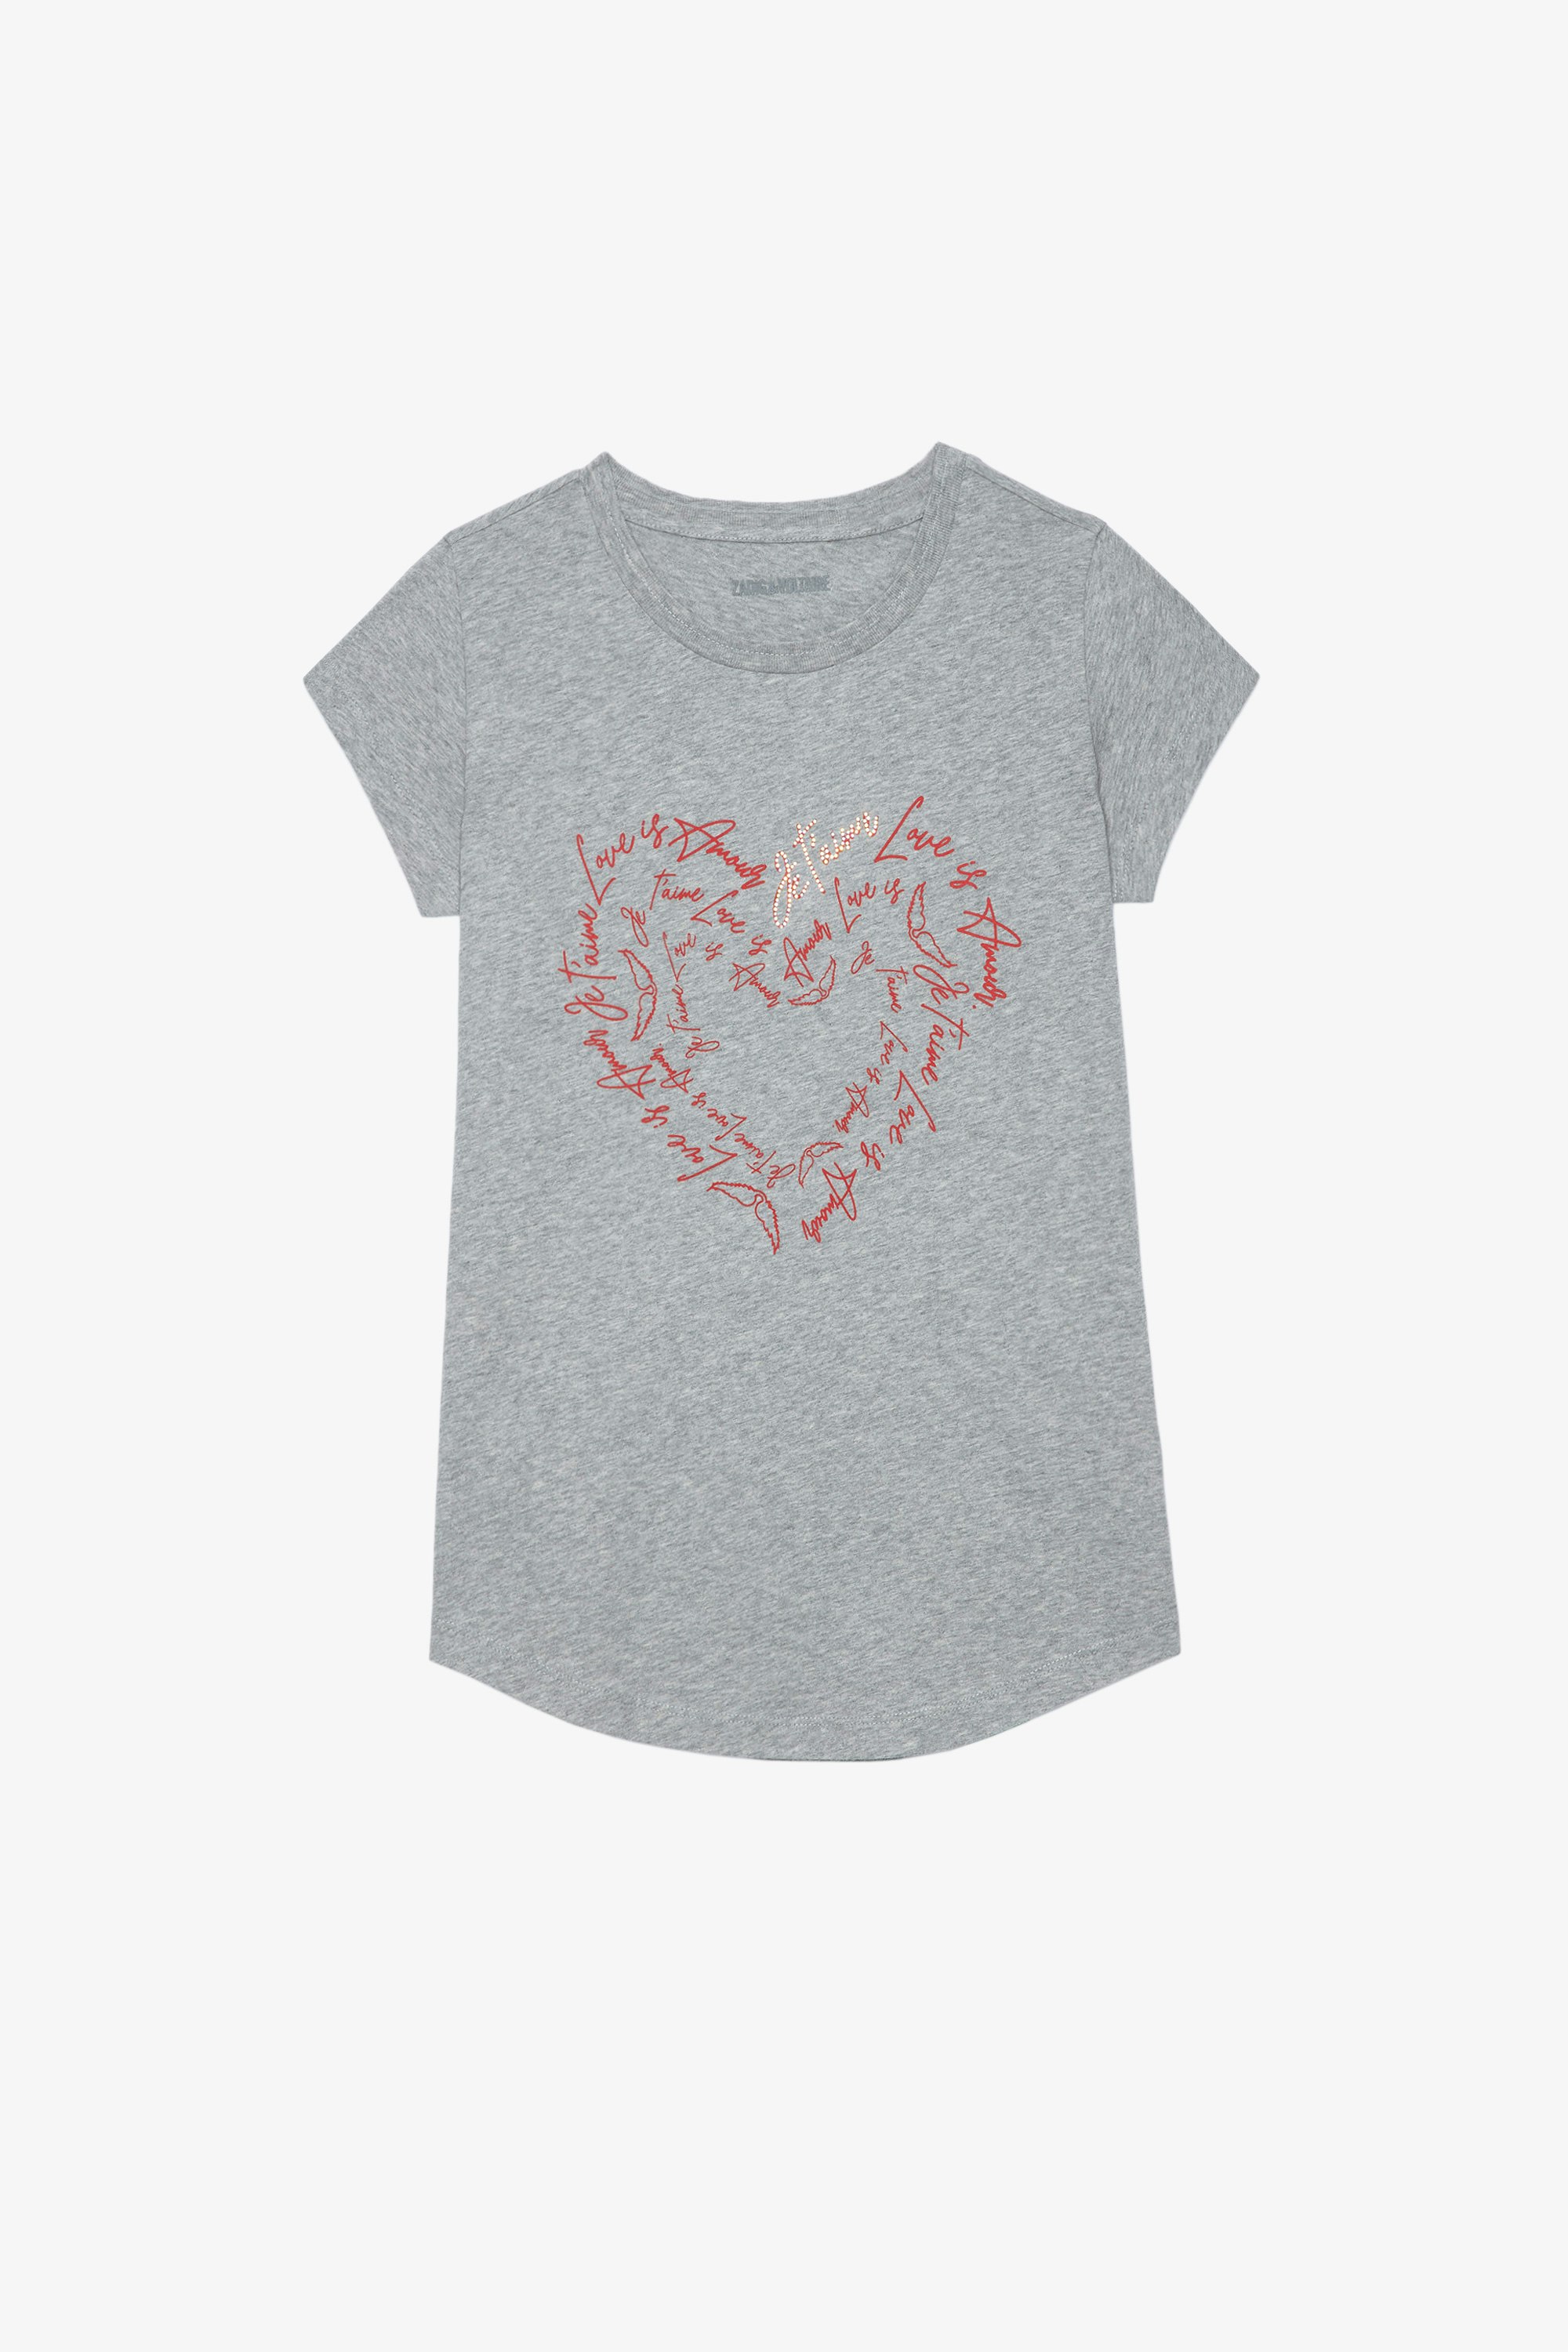 T-shirt Skinny Heart T-shirt in cotone grigio screziato con stampa a forma di cuore e cristalli, Donna